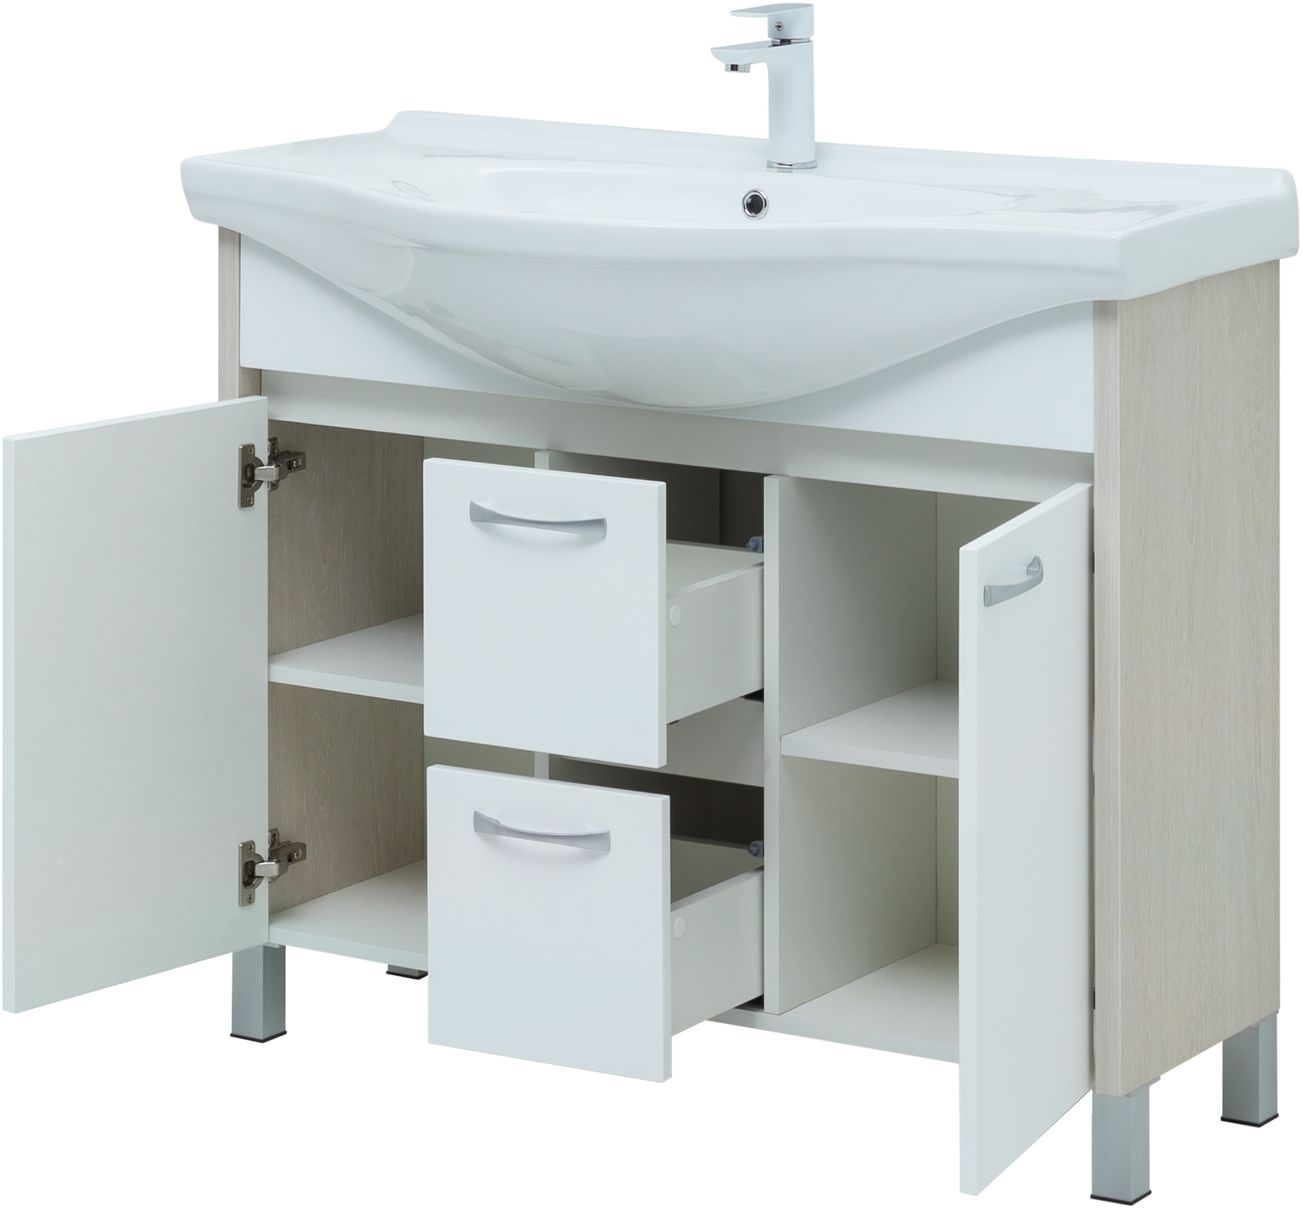 Мебель для ванной Aquanet Донна 102 см напольная 2 ящика и 2 дверцы, дуб, белый, цвет хром 274164 - фото 4